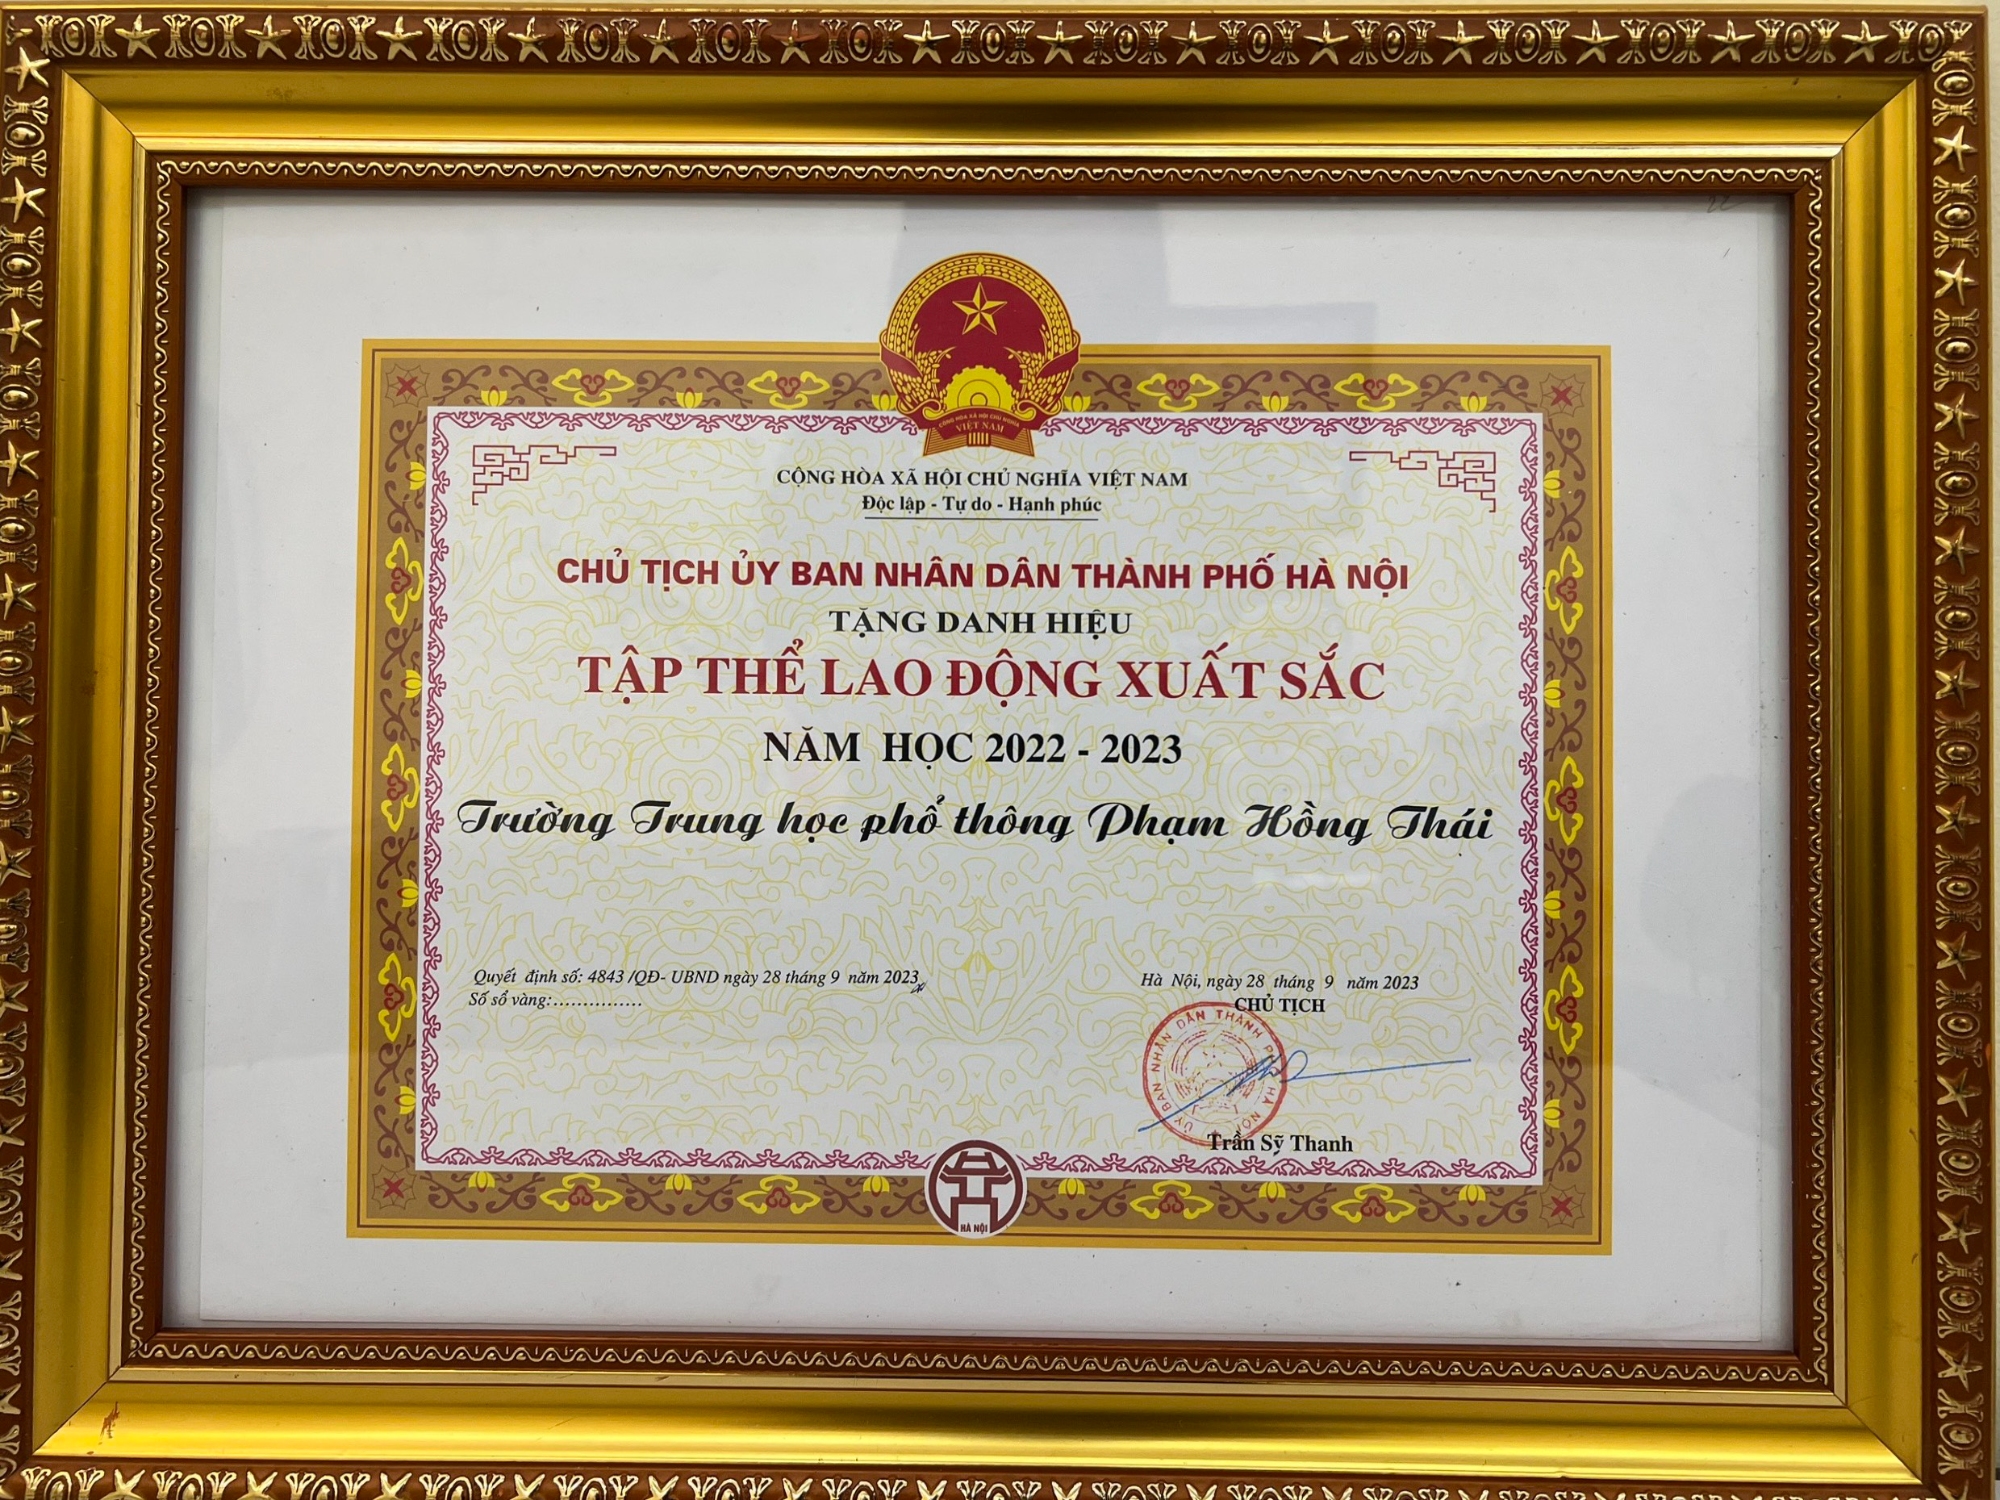 Trường THPT Phạm Hồng Thái đạt danh hiệu Tập thể lao động xuất sắc